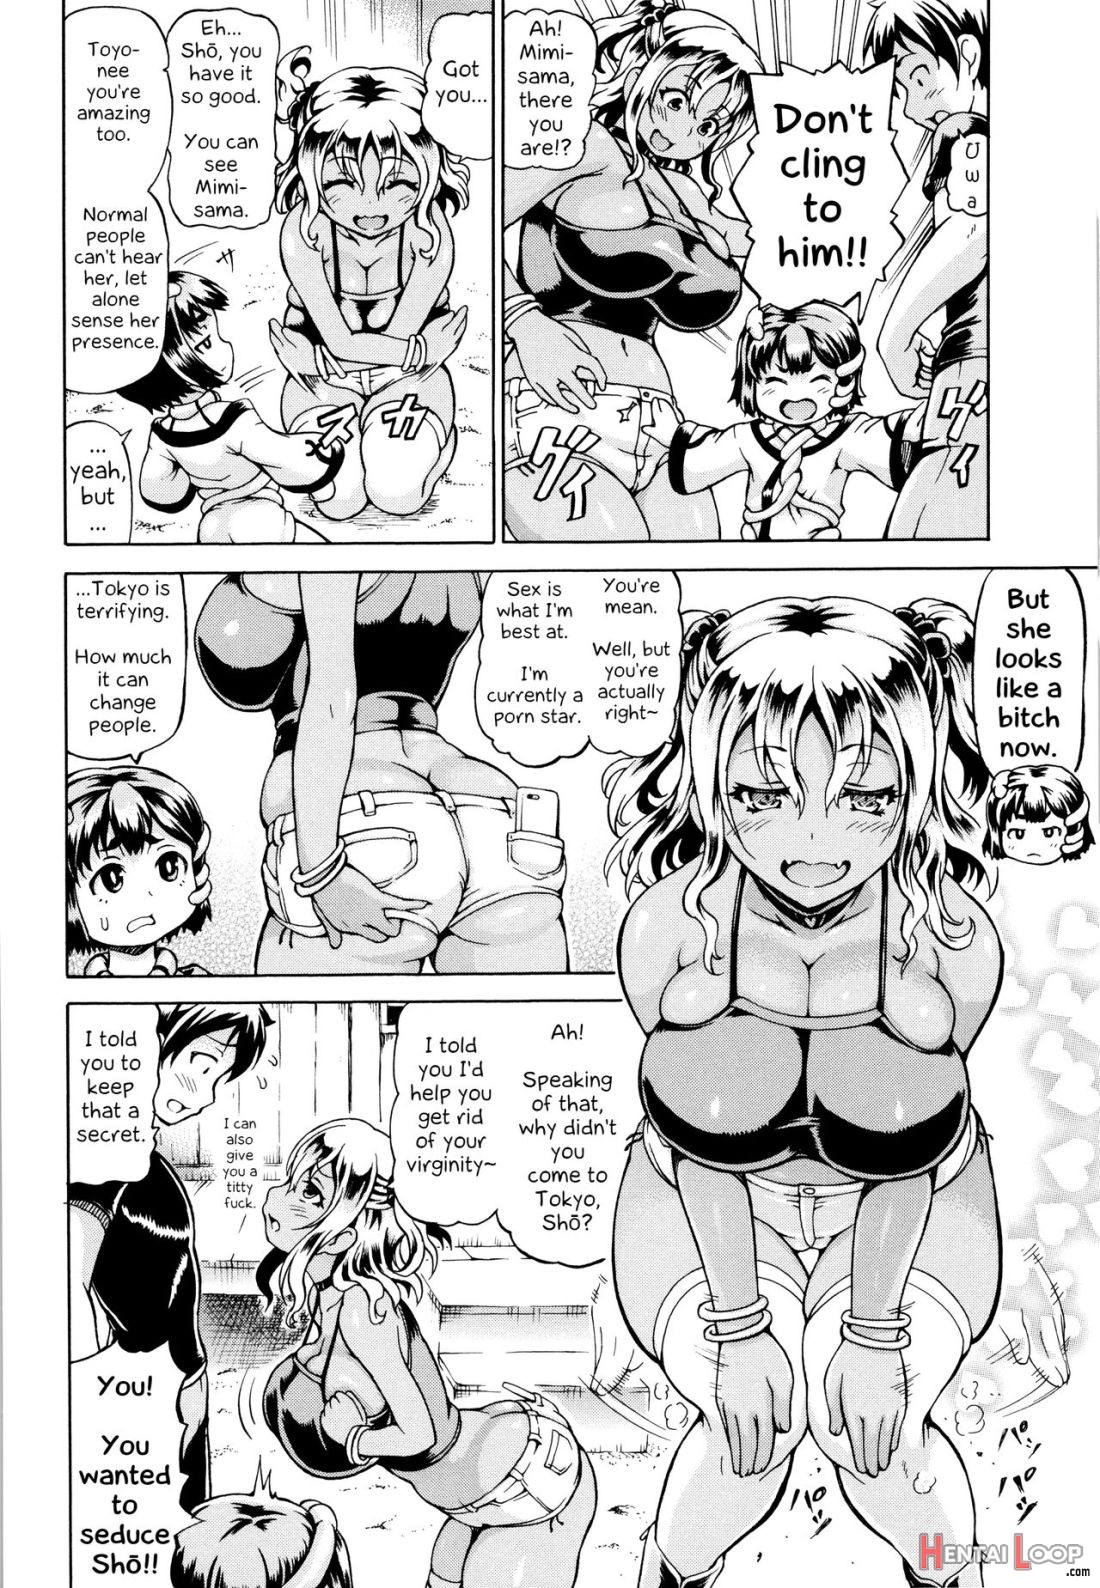 Mimi-sama Okkiku Shite! page 50